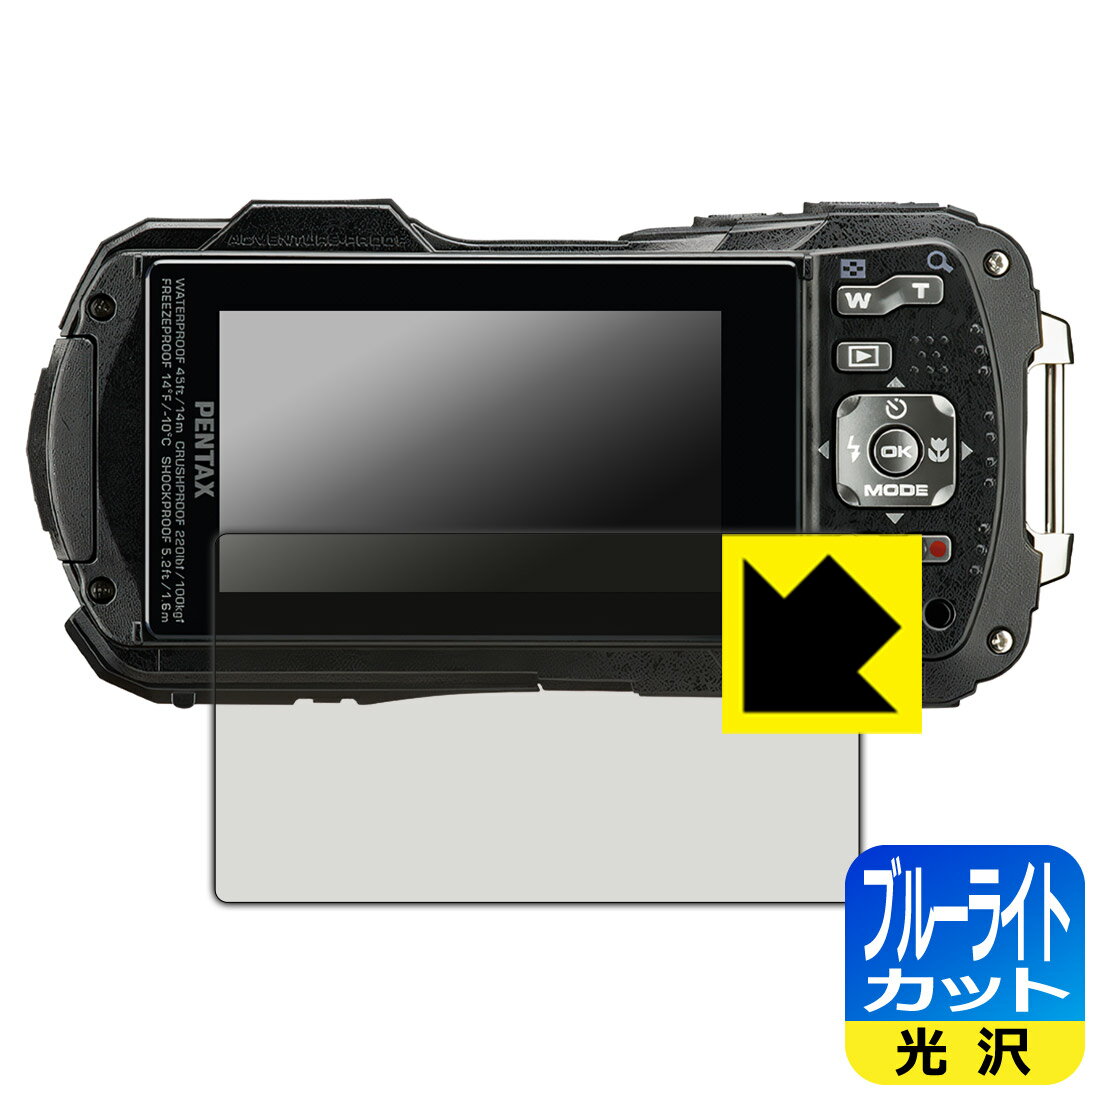 対応機種●対応機種 : RICOH コンパクトデジタルカメラ PENTAX WG-90専用の商品です。 (リコー ペンタックス)●製品内容 : 画面用フィルム1枚・クリーニングワイプ1個●目に有害といわれるブルーライトを35%カット！目に優しく疲れにくい！『ブルーライトカット(光沢)の保護フィルム』●安心の国産素材を使用。日本国内の自社工場で製造し出荷しています。 ★貼り付け失敗交換サービス対象商品★ 国内自社工場製造・発送だからできる 安心の製品保証とサポート ■製品保証 お届けした製品が誤っていたり、不具合があった場合などには、お届けから1ヶ月以内にメールにてお問い合わせください。交換等対応させていただきます。[キャンセル・返品（返金・交換）について] ■■貼り付け失敗時の交換サービス■■貼り付けに失敗しても1回だけ無償交換ができます。(失敗したフィルムをお送りいただき、新品に無償交換します。往復の送料のみお客様にご負担をお願いいたします。詳しくは製品に同封の紙をご確認ください) ■■保護フィルム貼り付け代行サービス■■保護フィルムの貼り付け作業に自信がない方には、PDA工房で貼り付け作業を代行いたします。(PDA工房の保護フィルムのみが対象です。詳しくは製品に同封の紙をご確認ください) ブルーライトカット【光沢】保護フィルム 素材説明 ■ブルーライトを大幅カット！液晶画面のLEDバックライトから発せられる「ブルーライト」は可視光線の中で最も刺激が強く、目や身体に悪影響があるのではないかといわれています。このフィルムは、画面に貼りつけるだけで380～495nmの「ブルーライト」を大幅にカットしますので、仕事や遊びで、長時間液晶画面を使用する方や、目の疲れが気になる方にオススメです。「ブルーライトカット機能付きPCメガネ」などをかけることなく、「ブルーライト」をカットすることができますので、メガネを持ち歩く必要もなく便利です。※全光線透過率：75%※この製品はブラウンスモーク色です。■ハードコートでスリキズを防ぎ、フッ素加工で汚れもつきにくい！ハードコート加工がされており、キズや擦れに強くなっています。簡単にキズがつかず長くご利用いただけます。また、フッ素コーティングにより、皮脂が浮きあがるため、拭き取り性が高くなっております。指滑りはつるつるとしたなめらかさで、快適な使用感です。■気泡の入りにくい特殊な自己吸着タイプ接着面は気泡の入りにくい特殊な自己吸着タイプです。素材に柔軟性があり、貼り付け作業も簡単にできます。また、はがすときにガラス製フィルムのように割れてしまうことはありません。貼り直しが何度でもできるので、正しい位置へ貼り付けられるまでやり直すことができます。■安心の日本製最高級グレードの国産素材を日本国内の弊社工場で加工している完全な Made in Japan です。安心の品質をお届けします。 【ポスト投函送料無料】商品は【ポスト投函発送 (追跡可能メール便)】で発送します。お急ぎ、配達日時を指定されたい方は以下のクーポンを同時購入ください。【お急ぎ便クーポン】　プラス110円(税込)で速達扱いでの発送。お届けはポストへの投函となります。【配達日時指定クーポン】　プラス550円(税込)で配達日時を指定し、宅配便で発送させていただきます。【お急ぎ便クーポン】はこちらをクリック【配達日時指定クーポン】はこちらをクリック